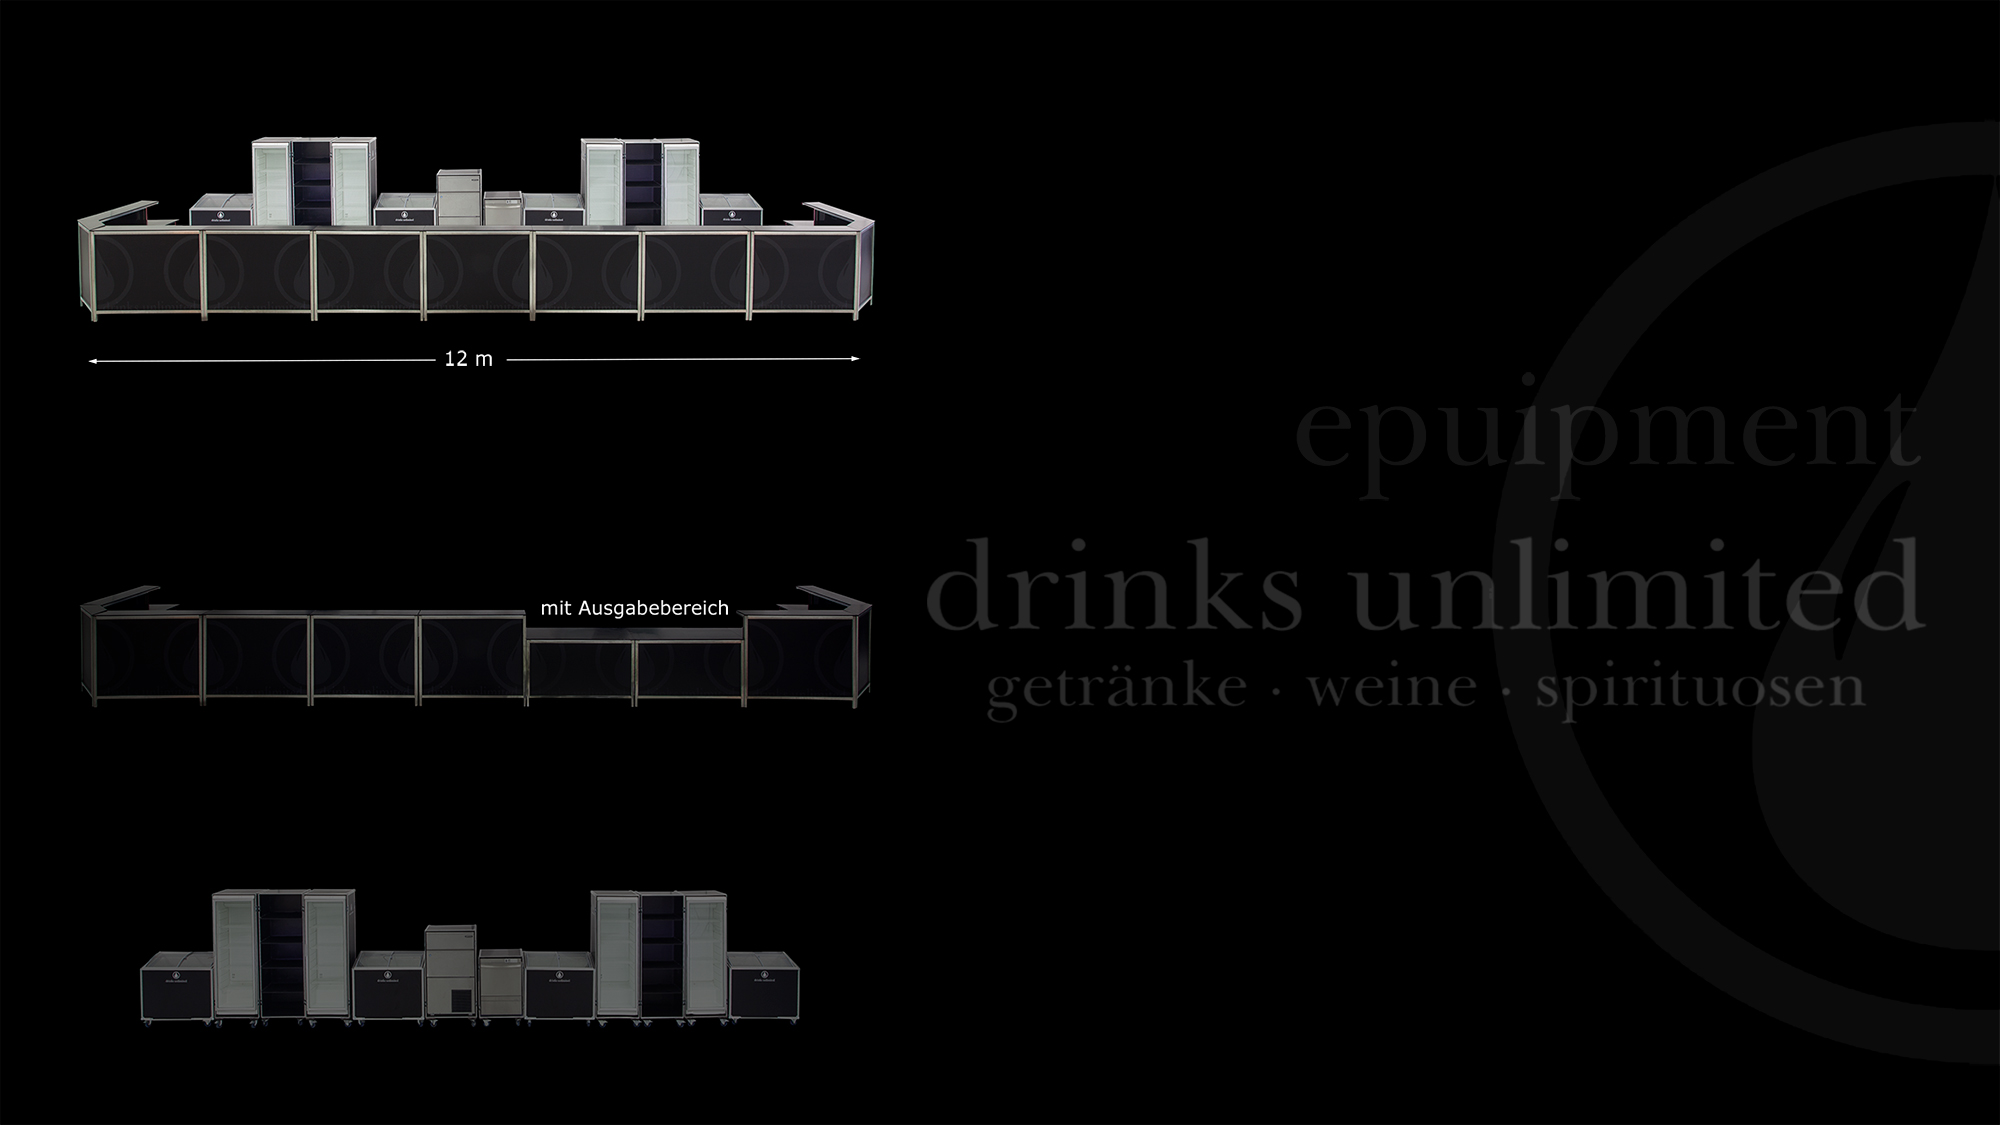 drinks unlimited frankfurt equipment